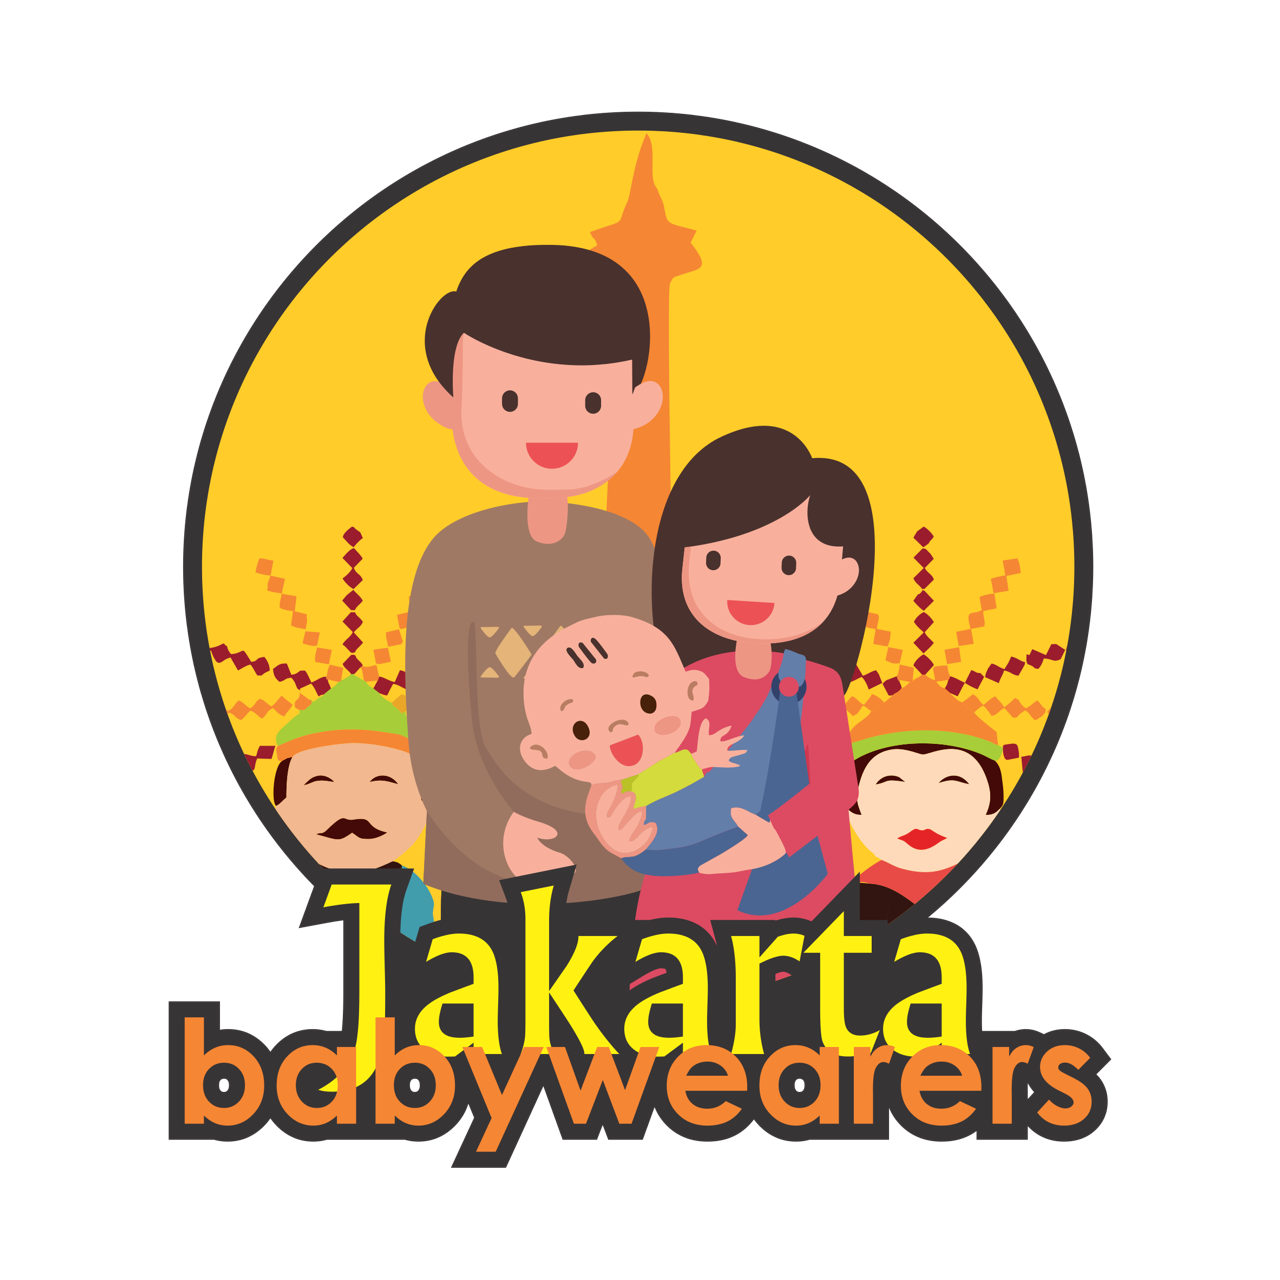 Jakarta Babywearers